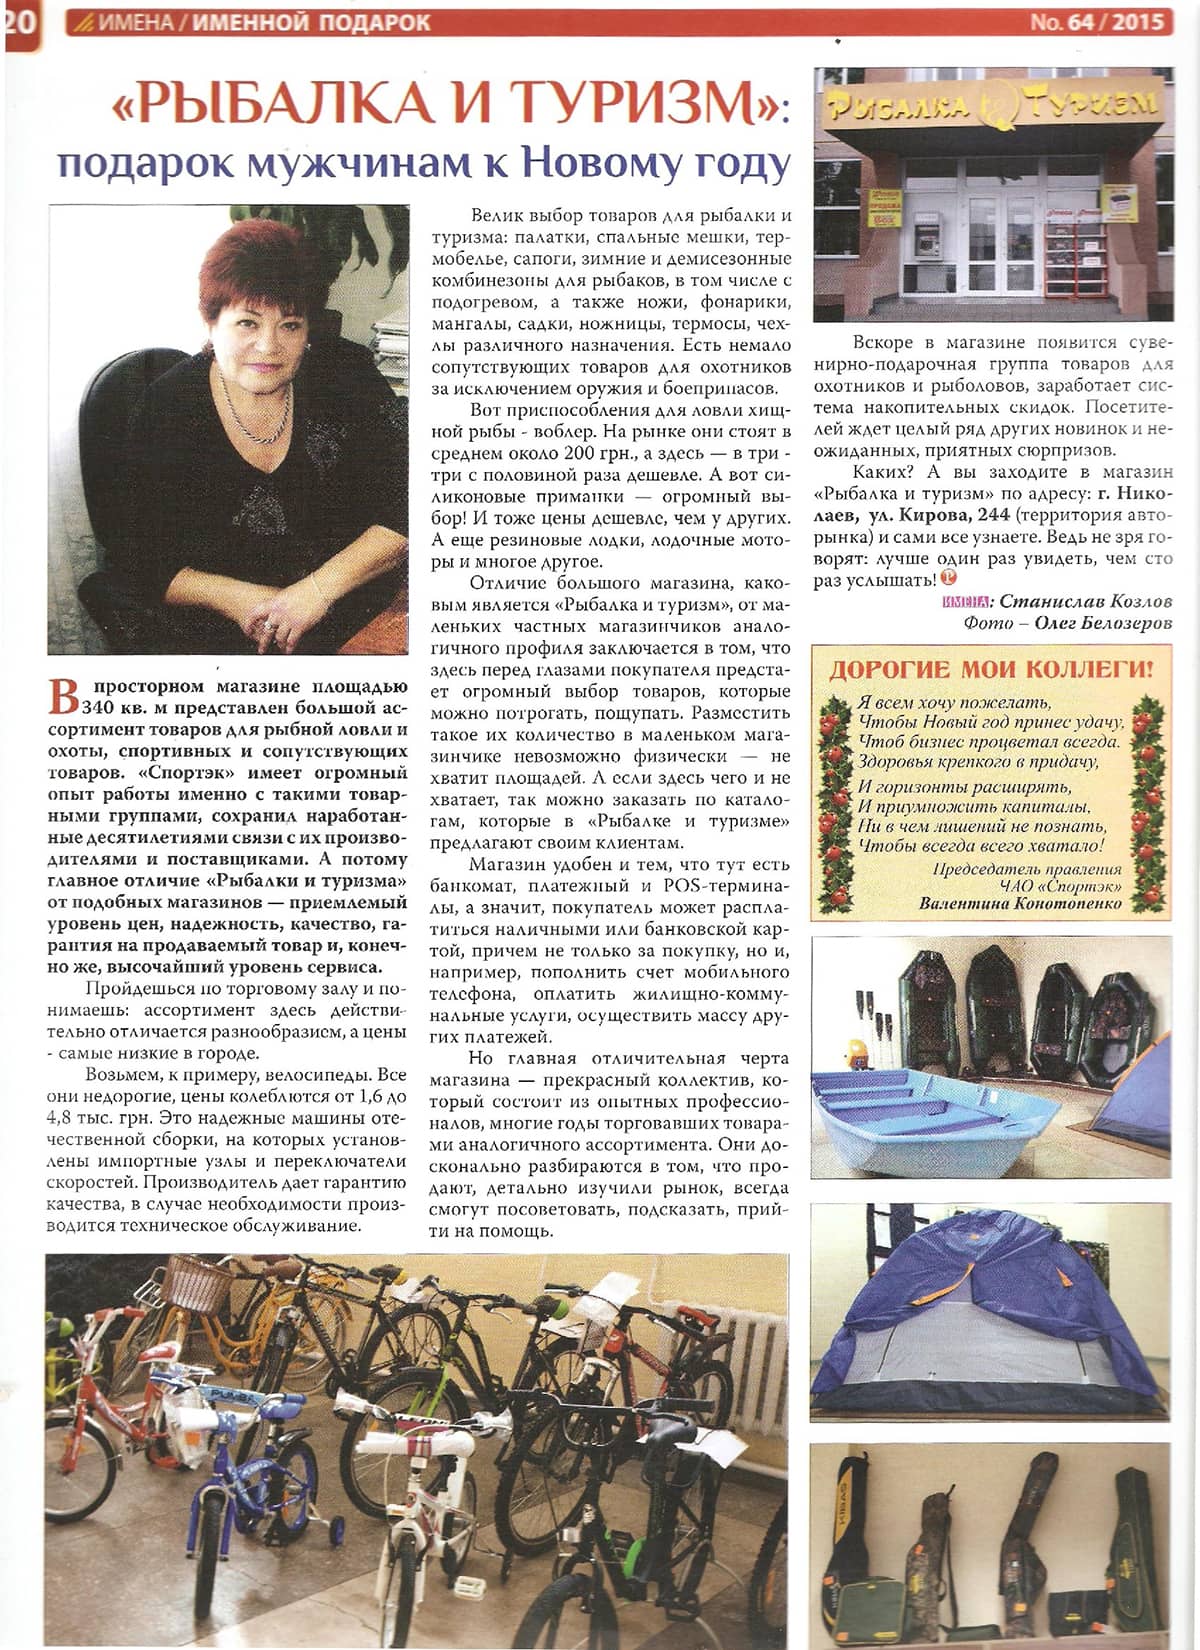 Статья во Всеукраинском общественно-политическом журнале "ИМЕНА" № 64 2015